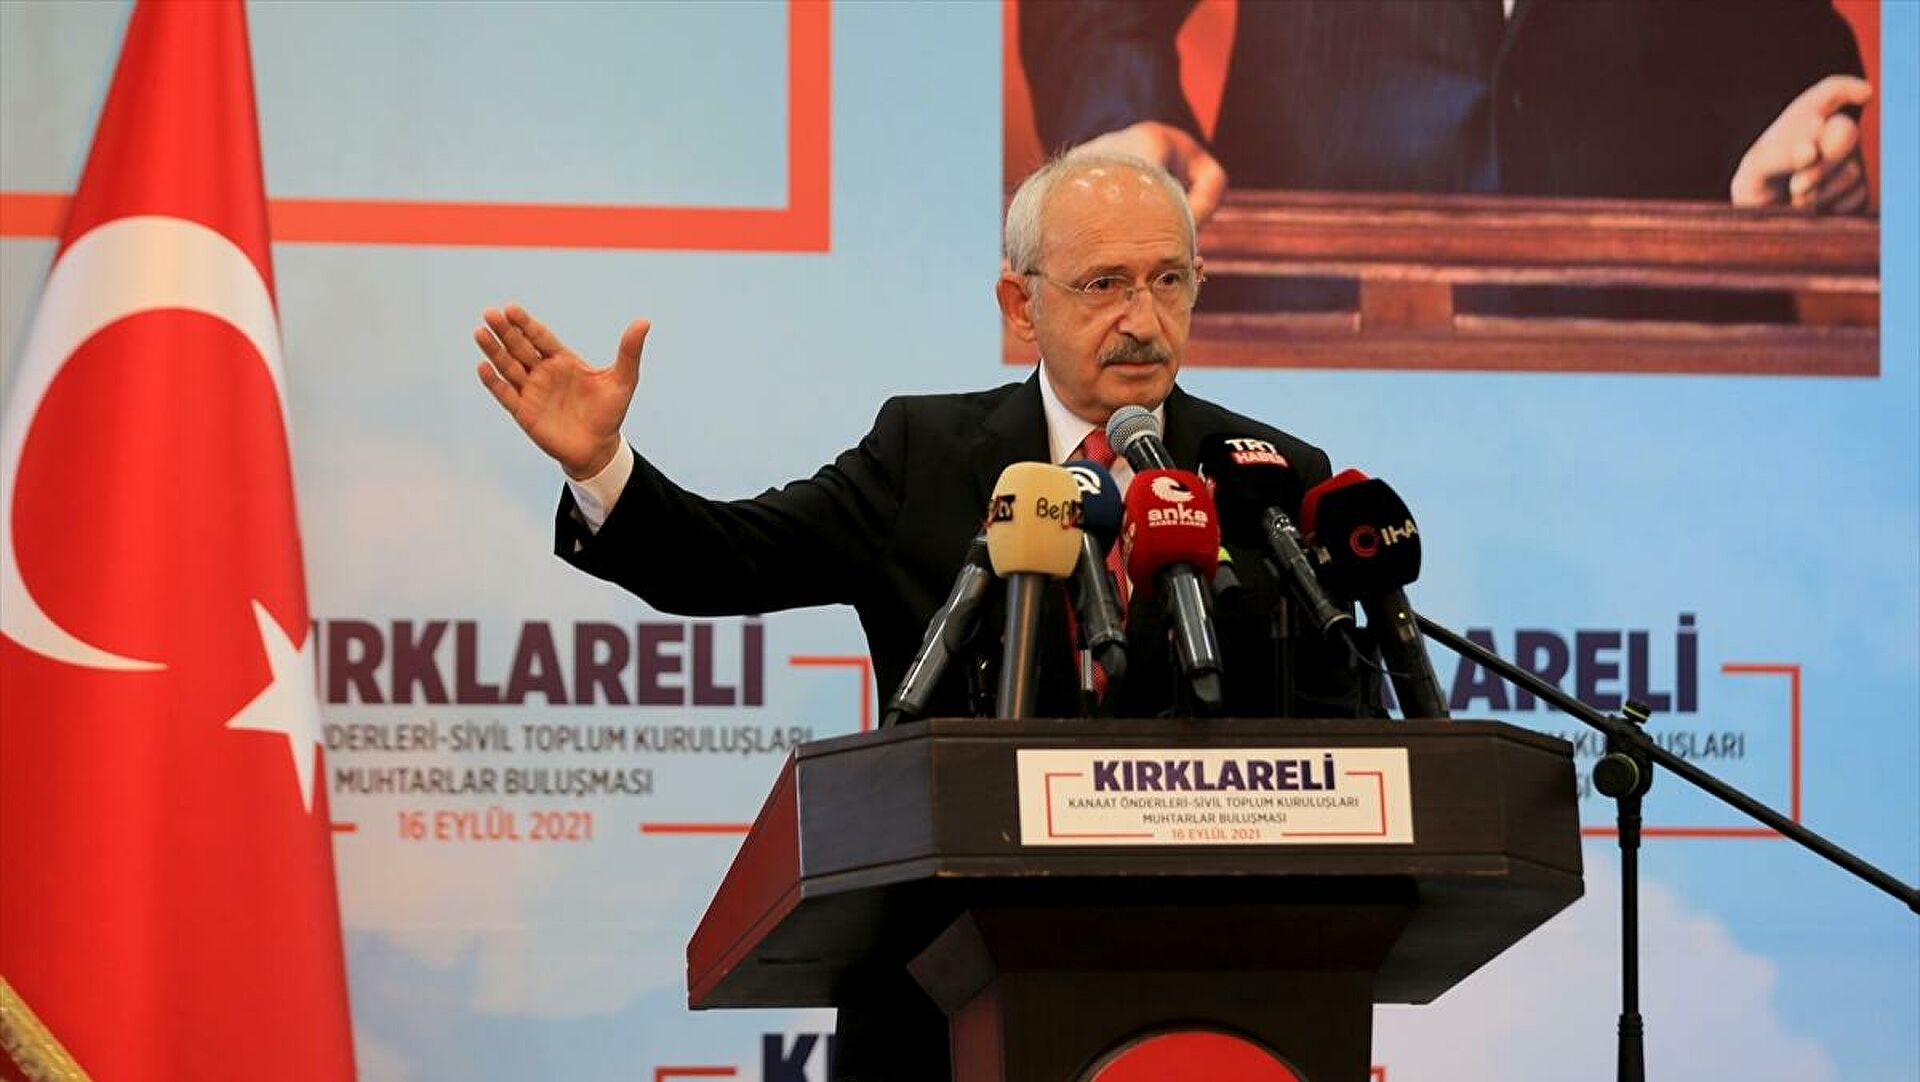 Kılıçdaroğlu: “20 yıl değil, 1 yıl içinde yurt sorununu çözmezsem siyaseti bırakacağım”